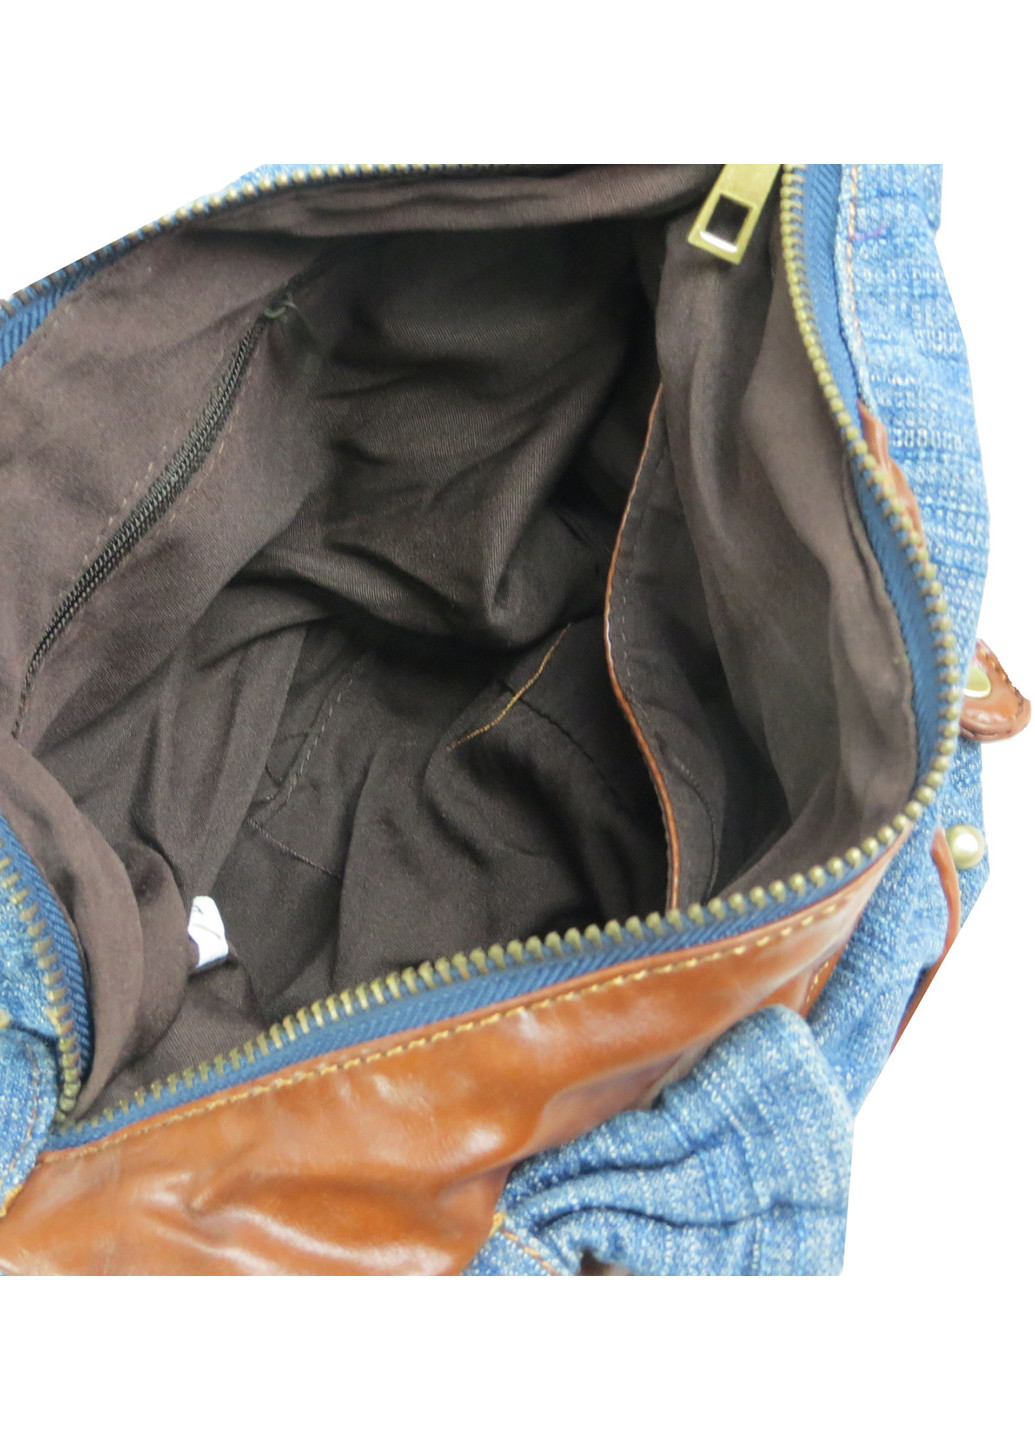 Женская джинсовая сумка небольшого размера 28х18х12 см FASHION JEANS (257045437)